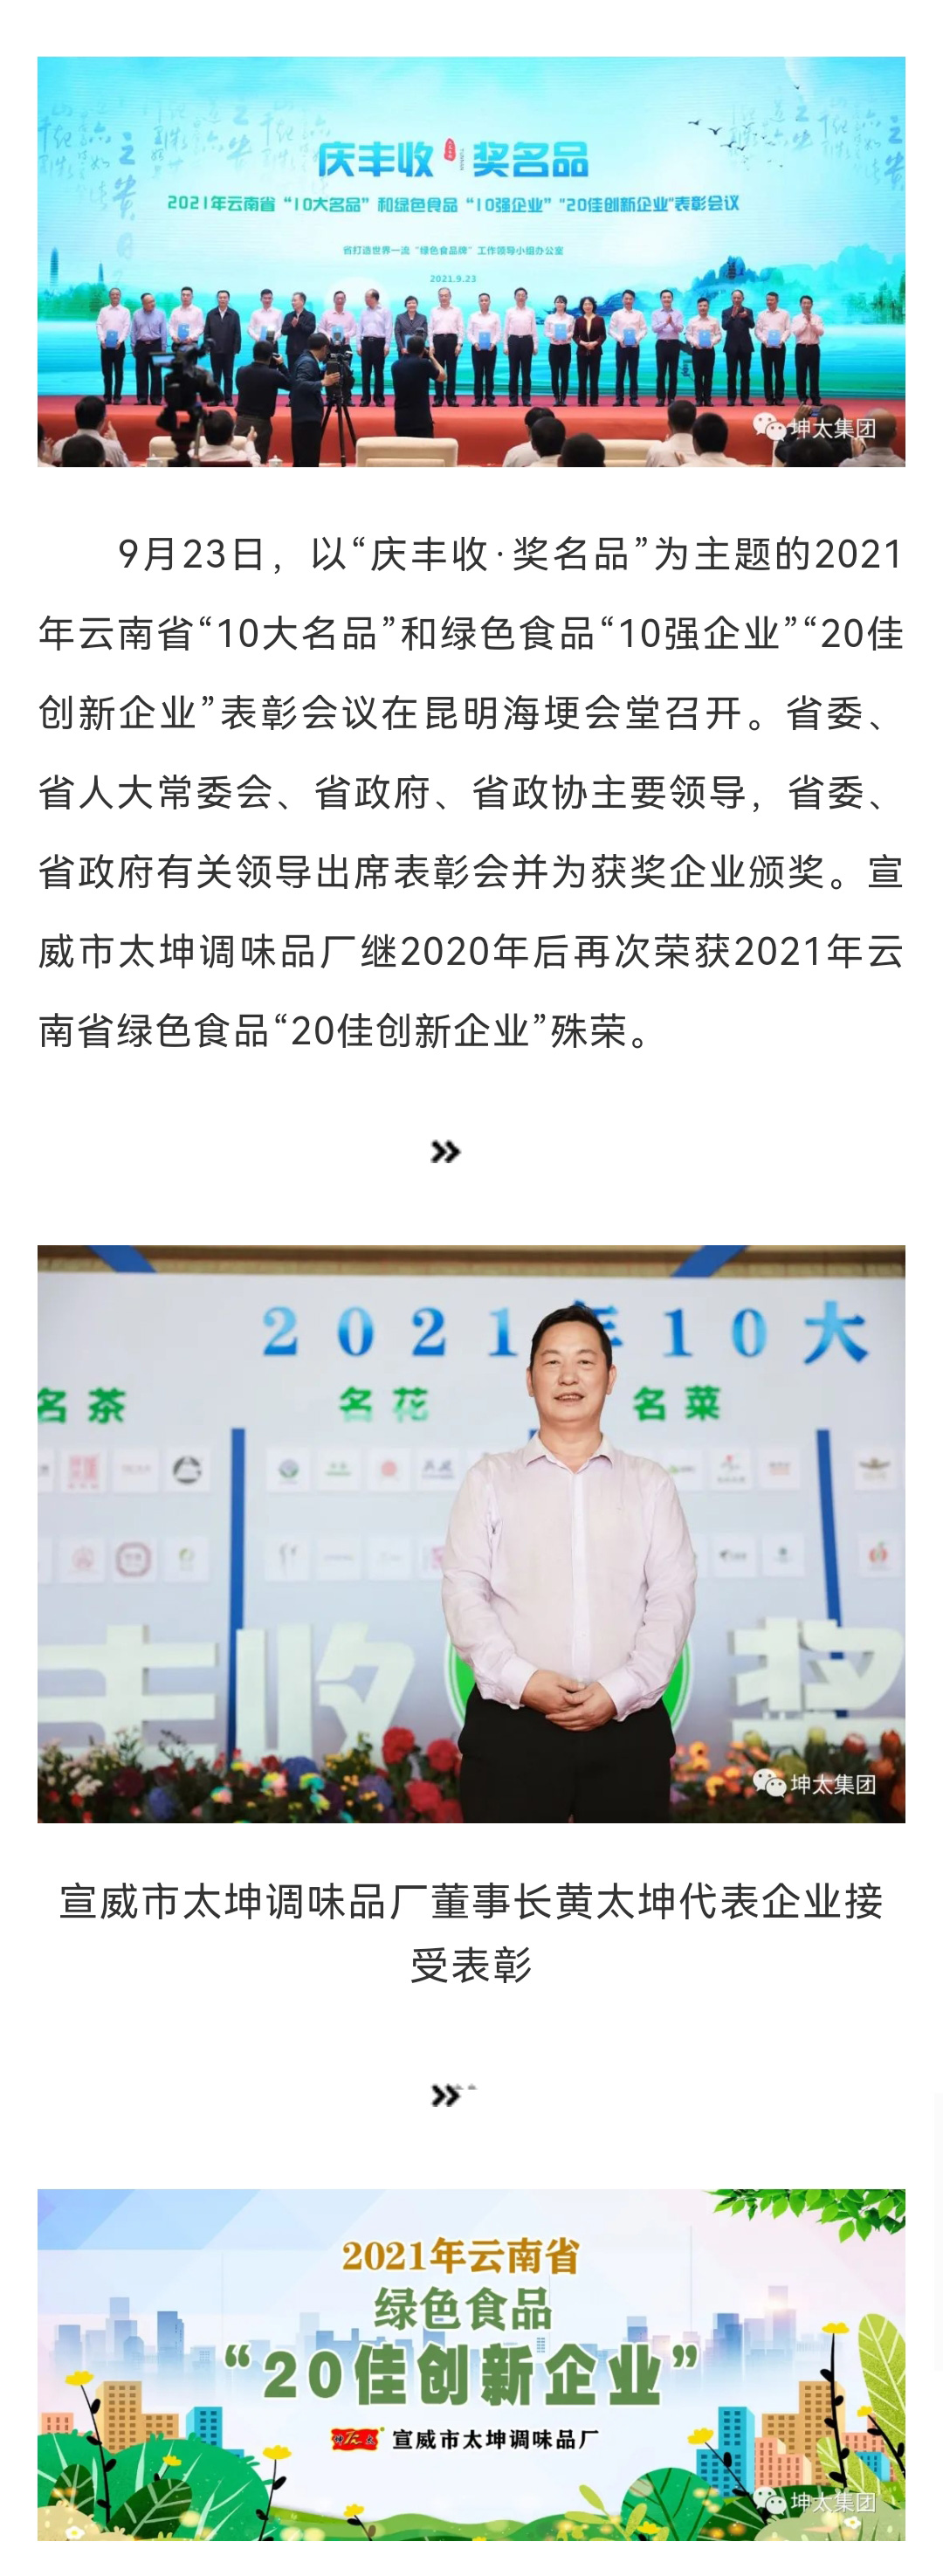 宣威市太坤调味品厂荣获2021年云南省绿色食品“20佳创新企业”_01.jpg